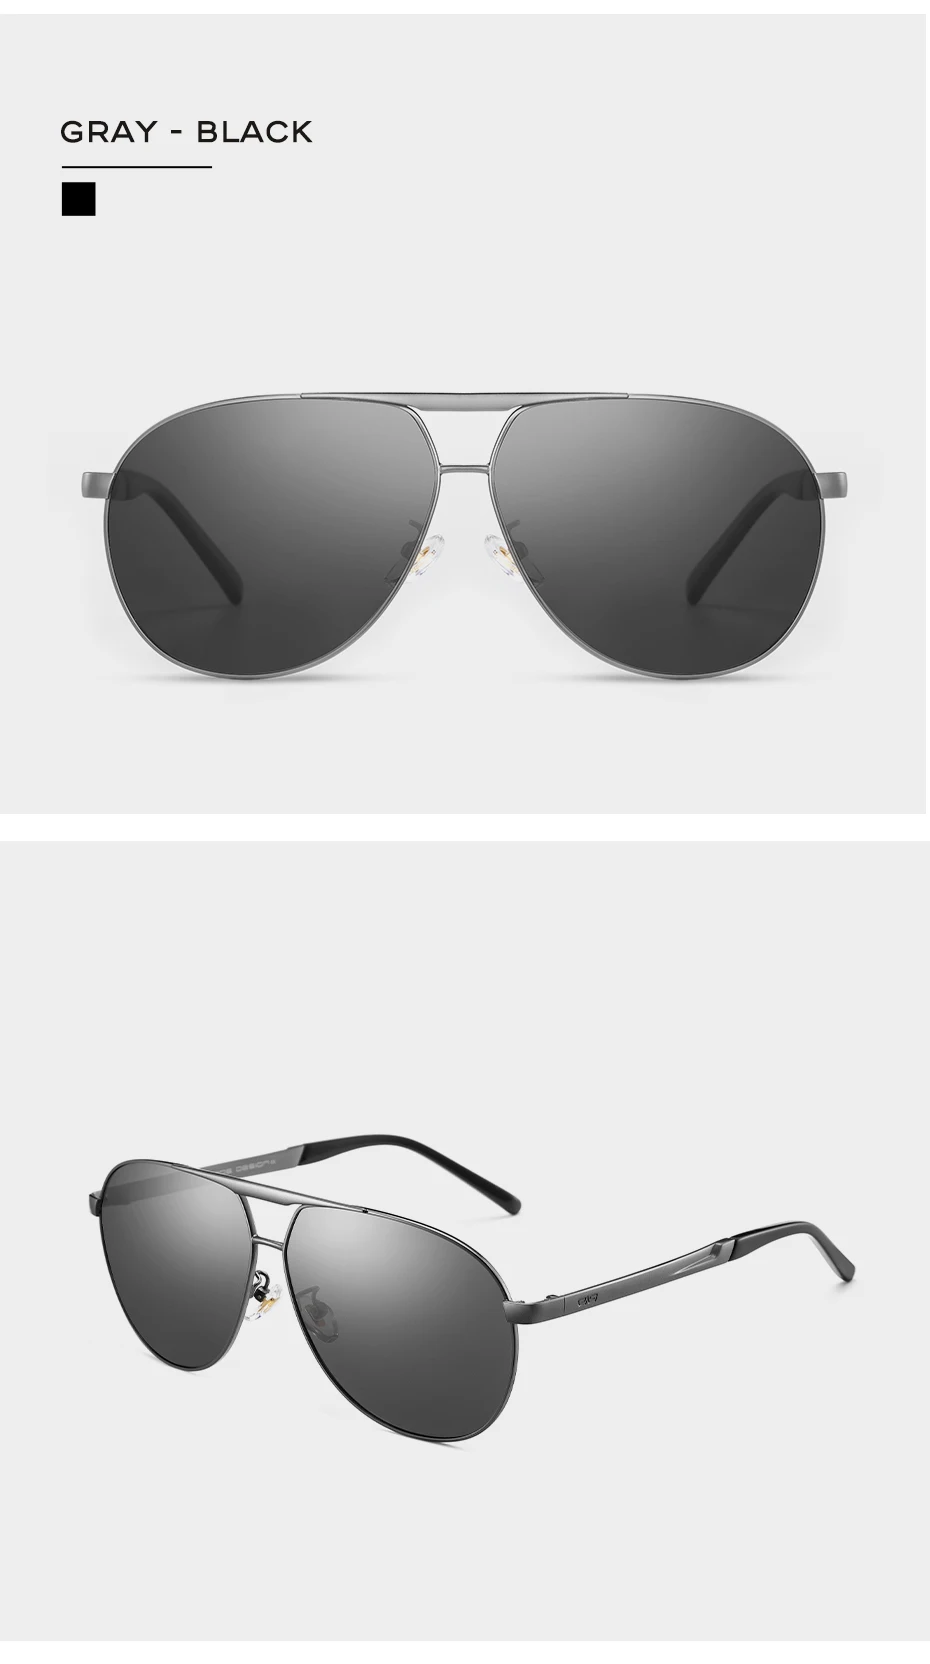 caponi homem óculos de sol condução polarizado óculos piloto clássico marca alta qualidade revestimento lente condução tons